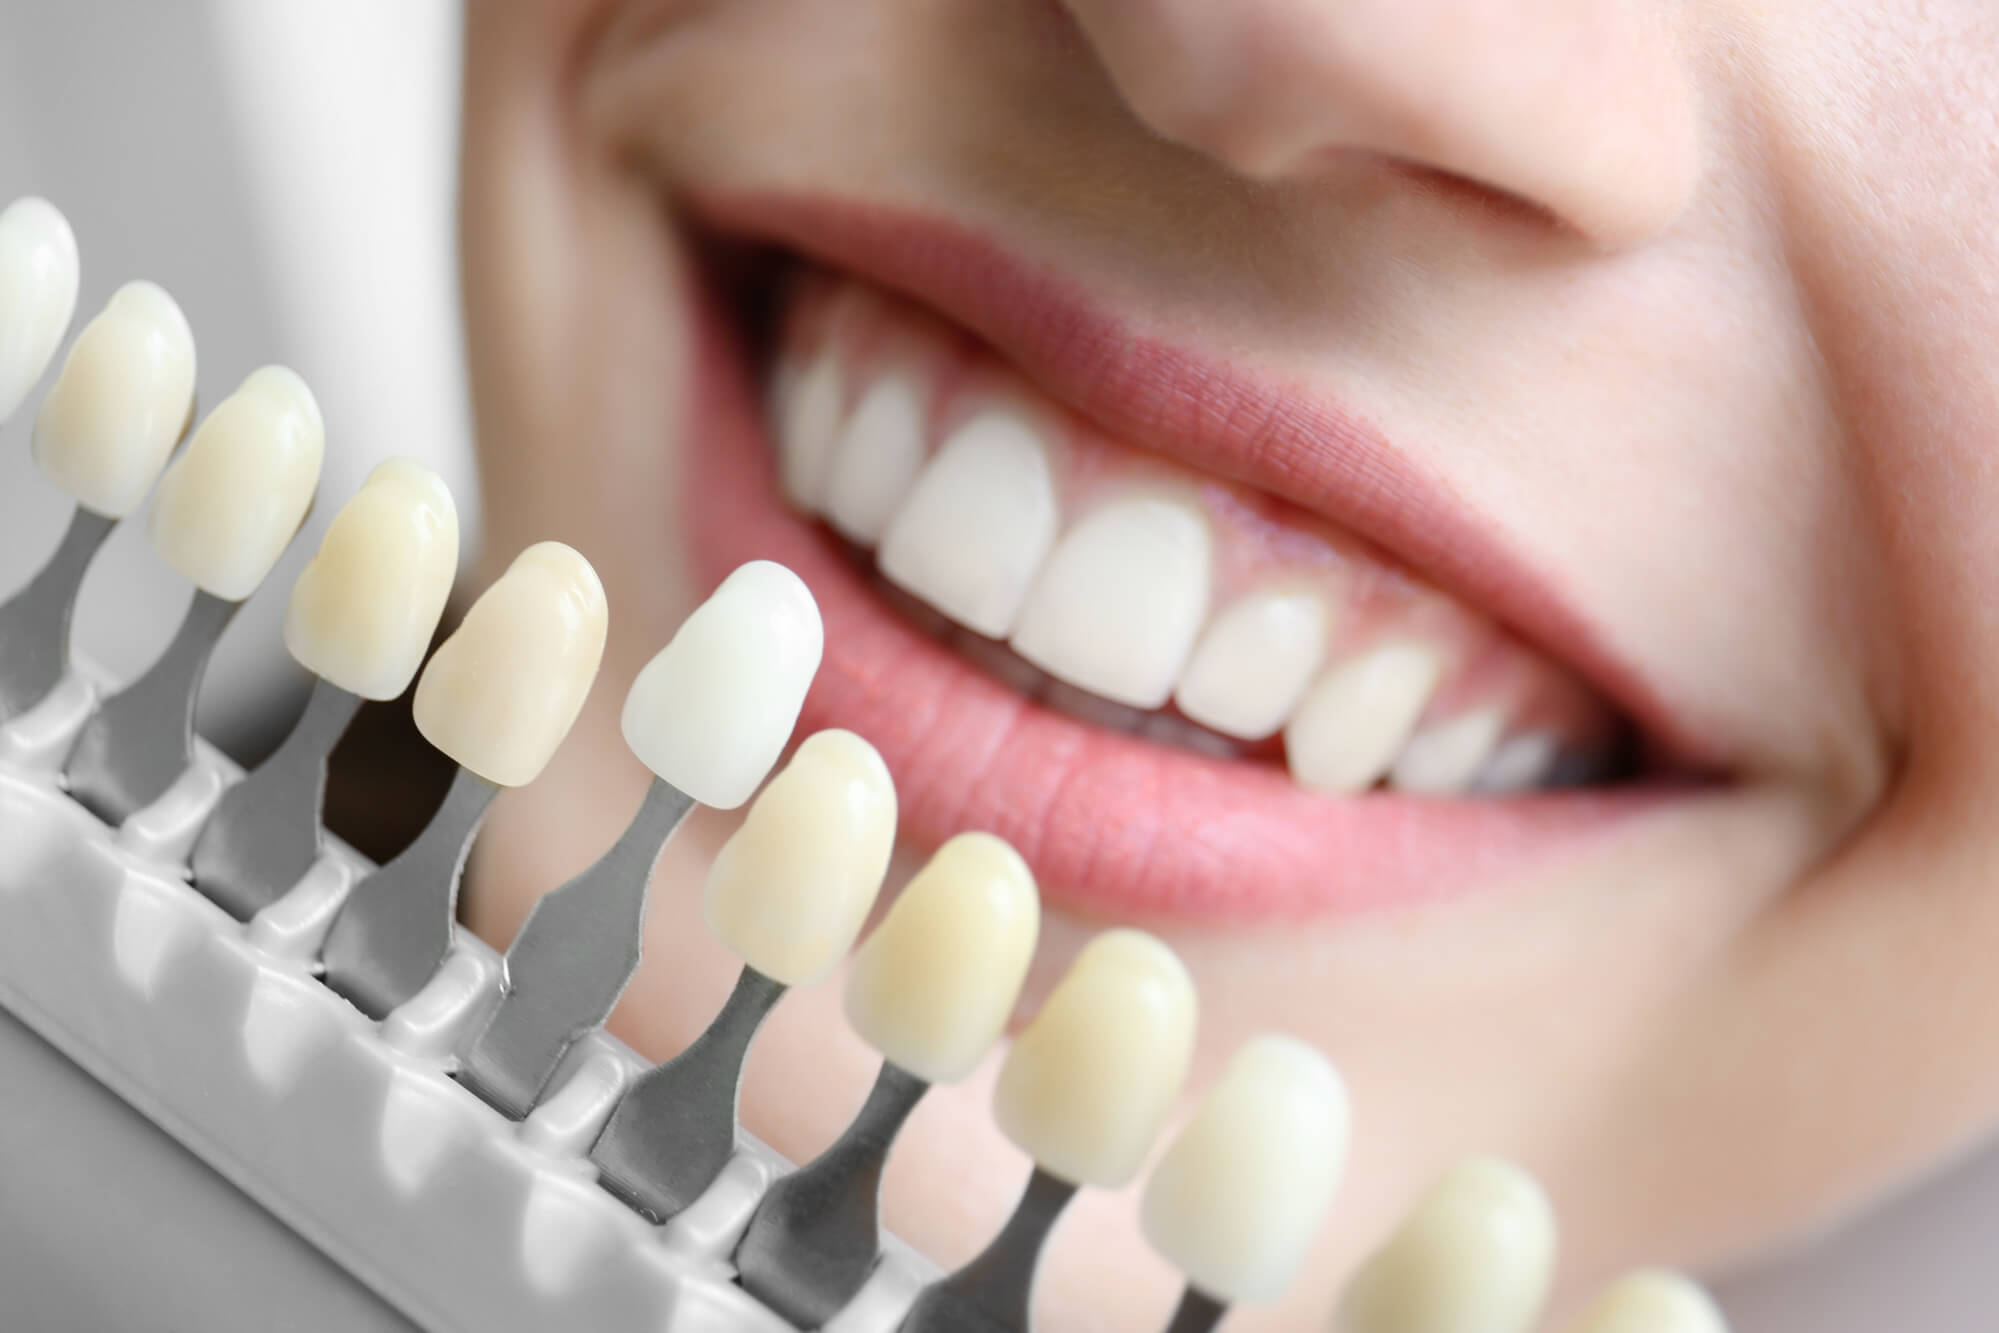 Descubra as principais vantagens do tratamento com aparelho ortodôntico autoligado. - image faceta-ou-lente-de-contato-dental-blog-dentcare-center-1 on https://molinosodontologia.com.br